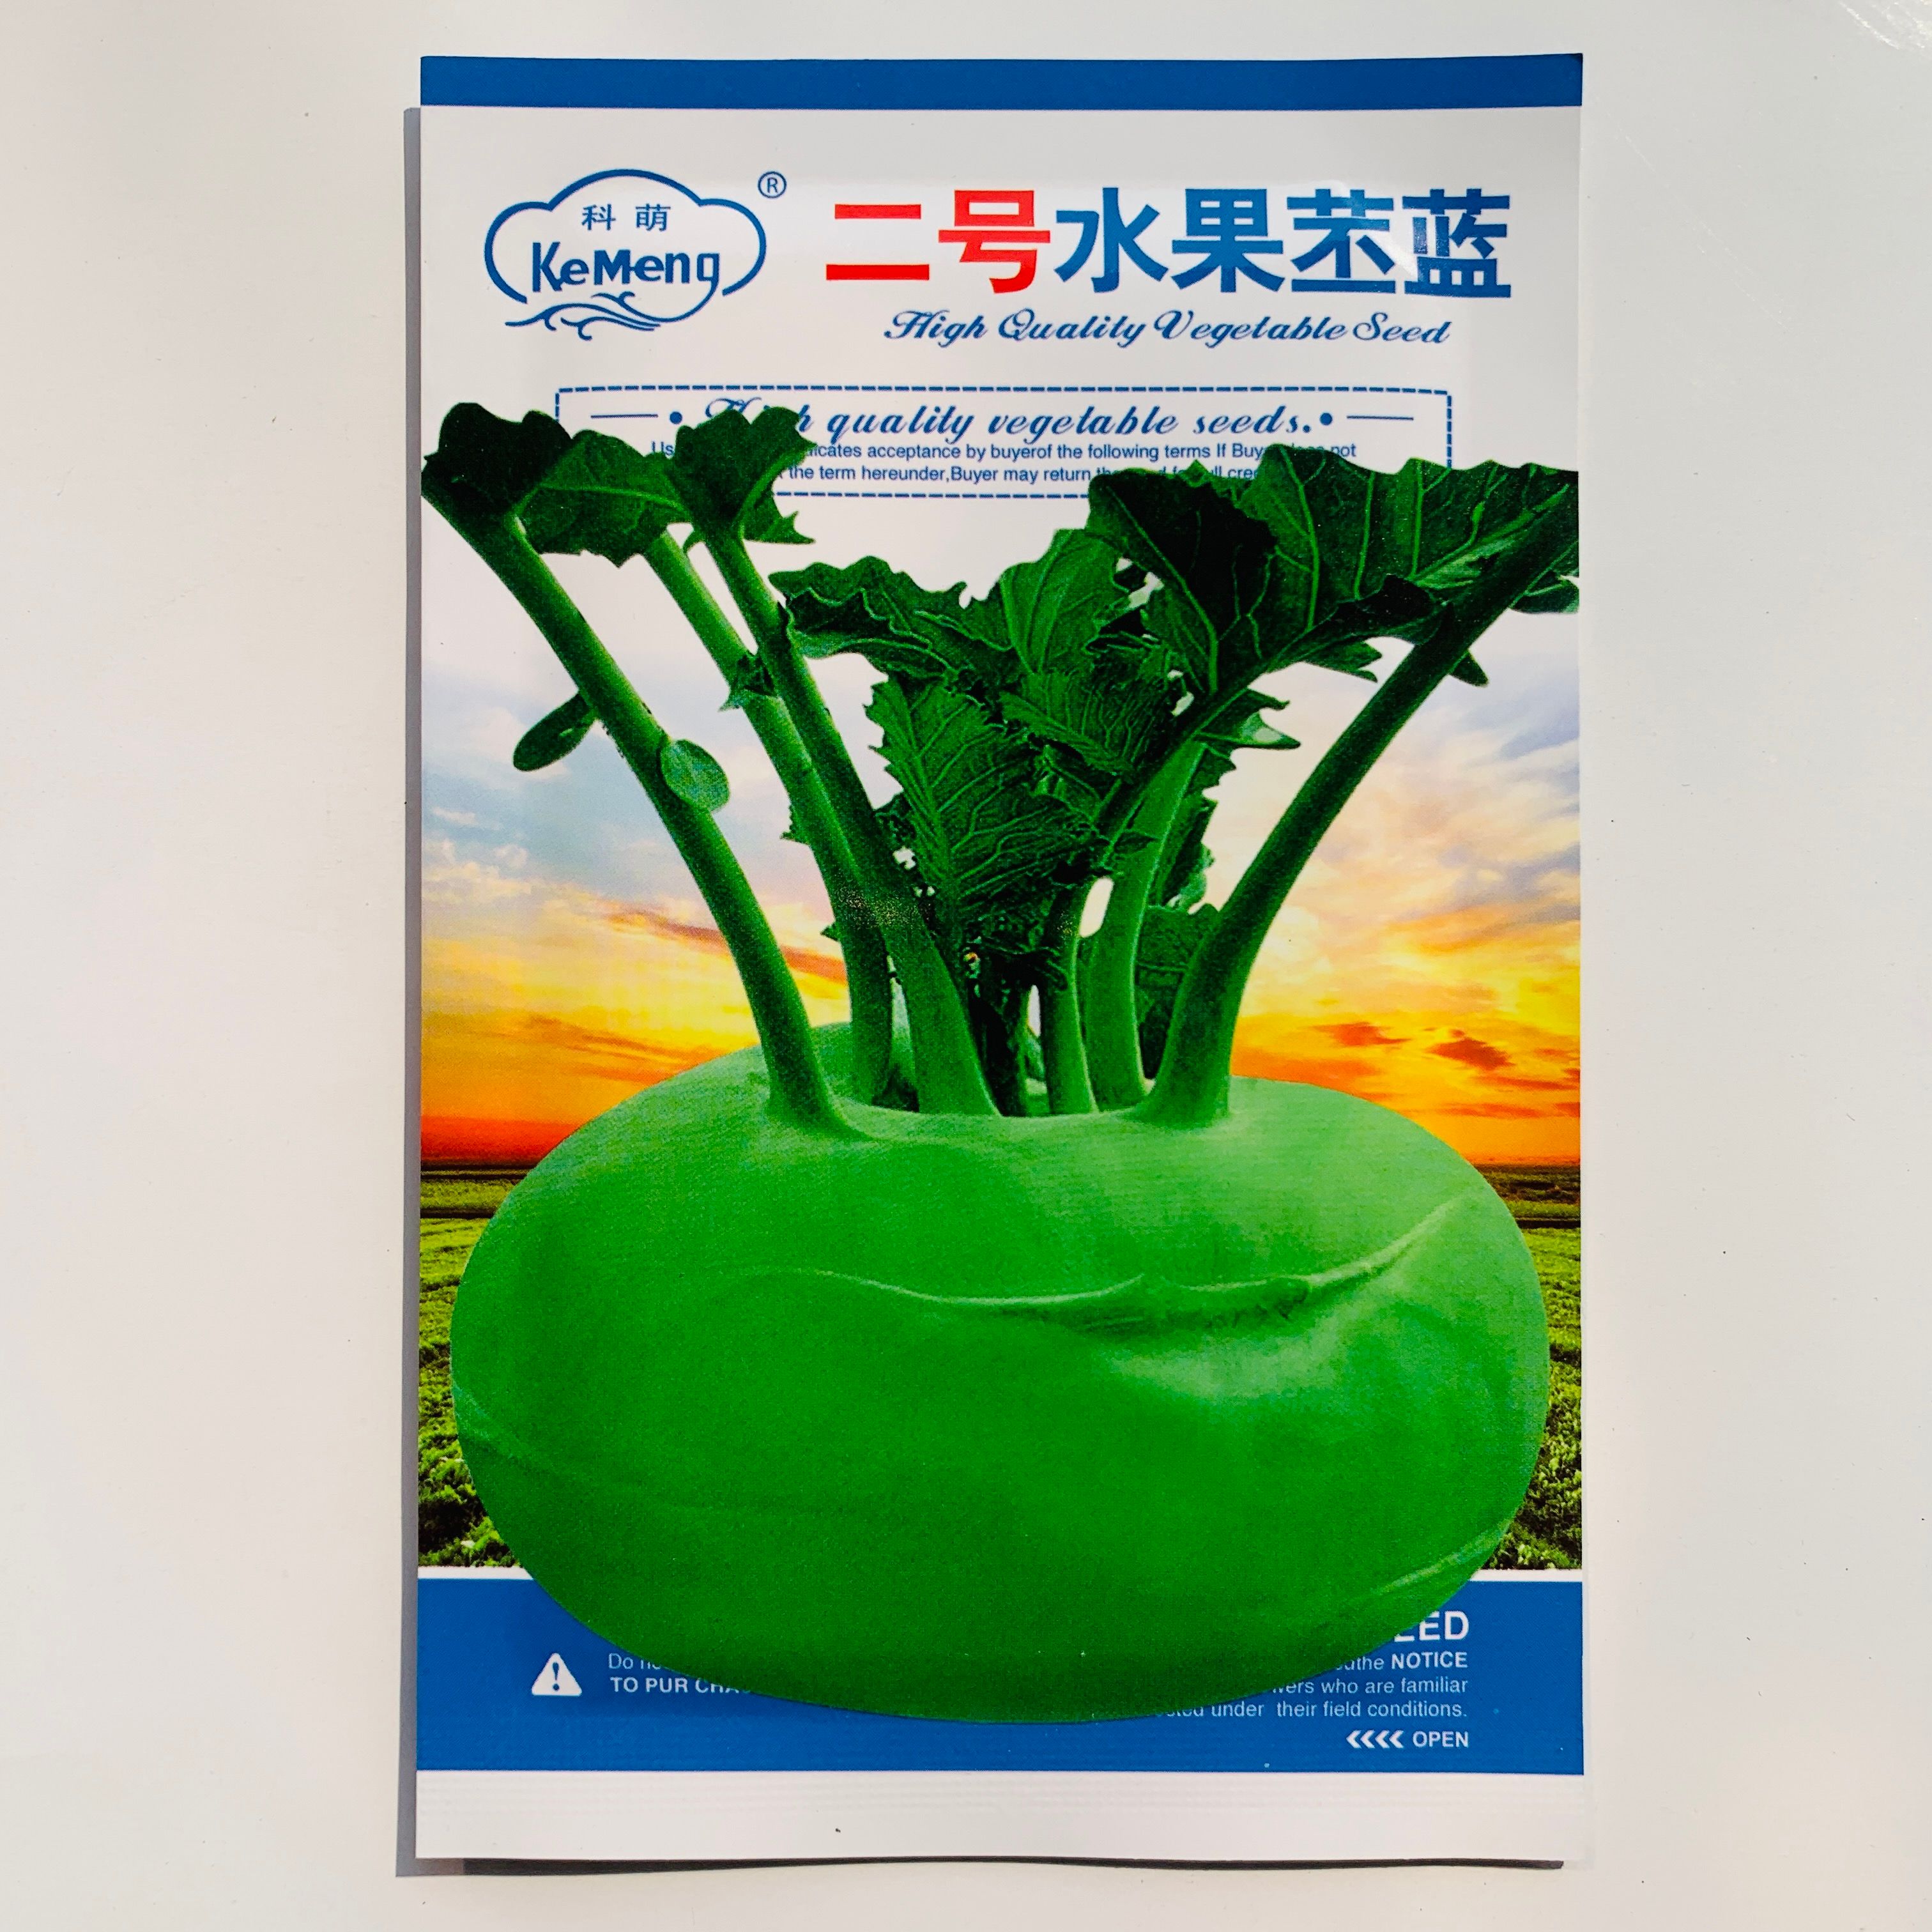 沭阳县四季水果苤蓝种子丰产基地用蔬菜良种翠玉青苤蓝菜球皮兰蔬菜种子